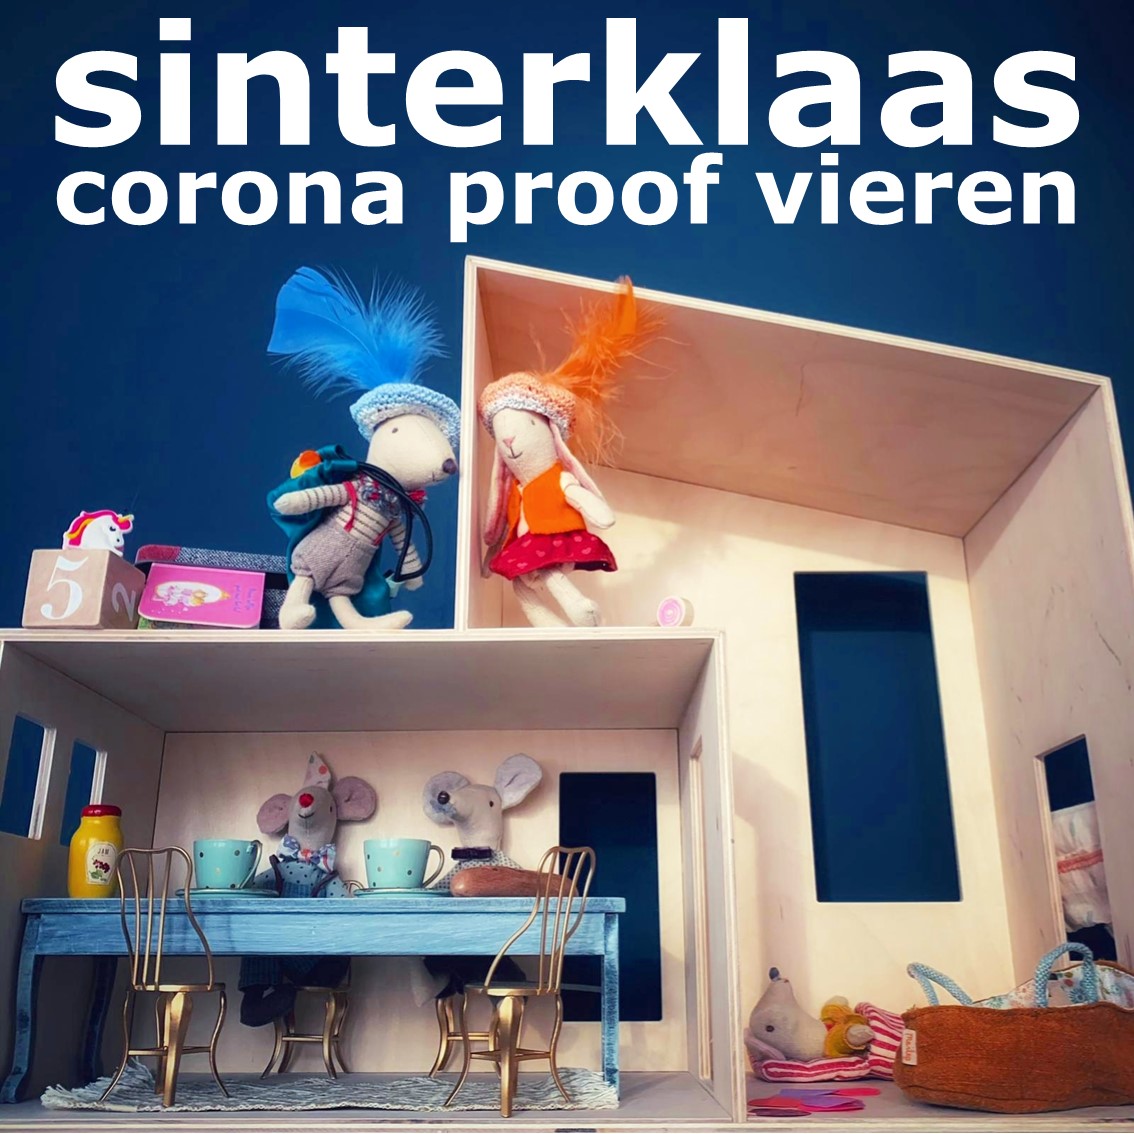 Sinterklaas corona proof vieren: ideeën voor intocht, pakjesavond en meer